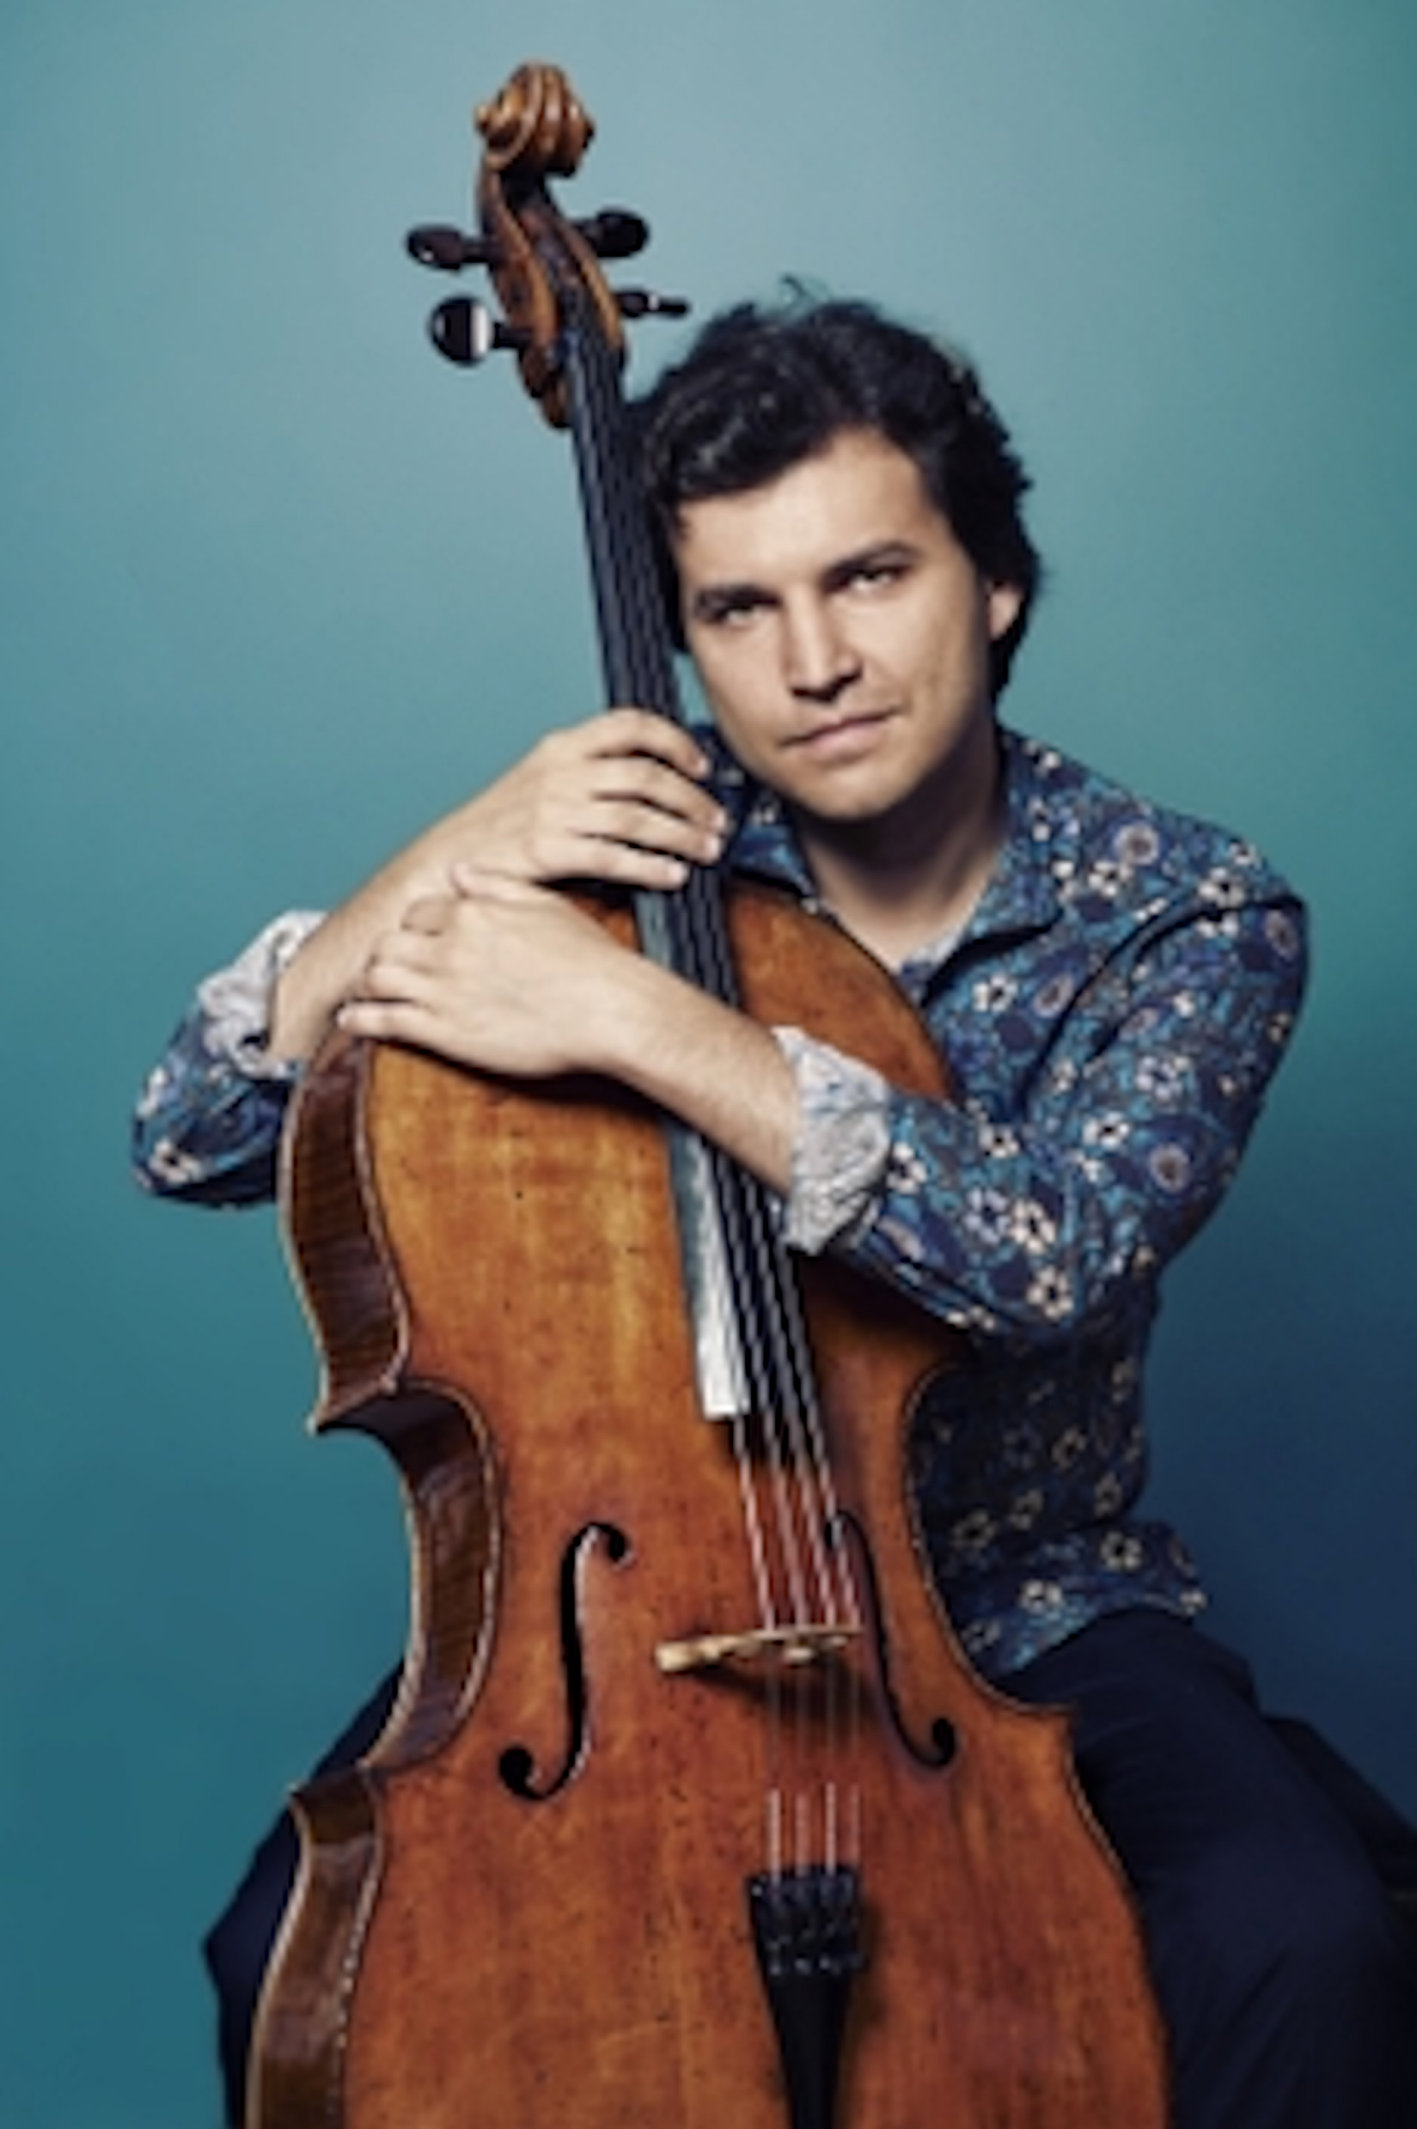 Fallece el joven violonchelista ruso Alexander Bouzlov, con 37 años de edad